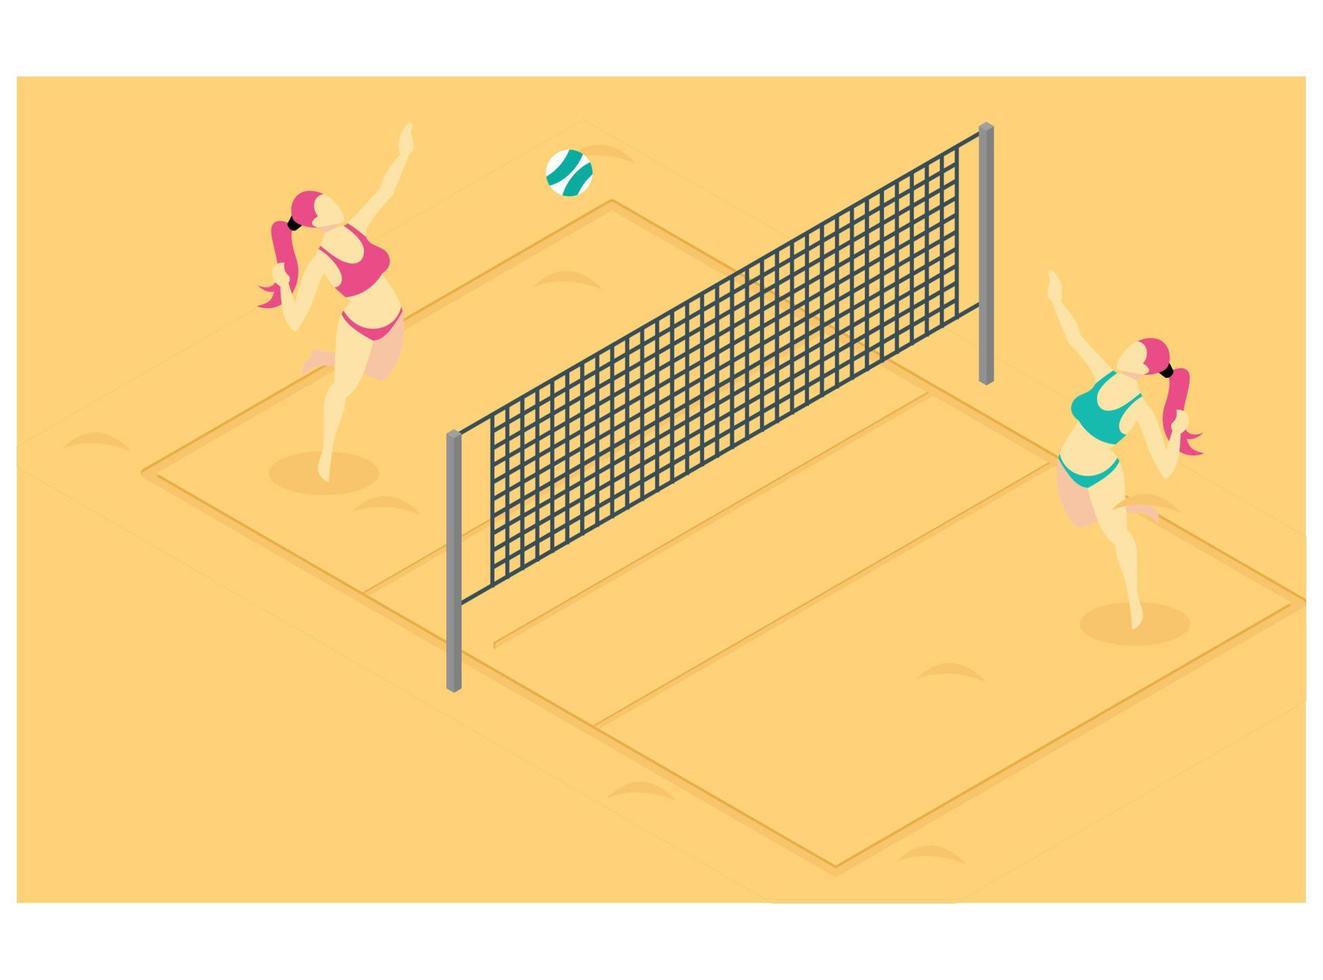 3d isométrico jugando voleibol de playa en arena de playa marrón. ilustración isométrica vectorial adecuada para diagramas, infografías y otros activos gráficos vector